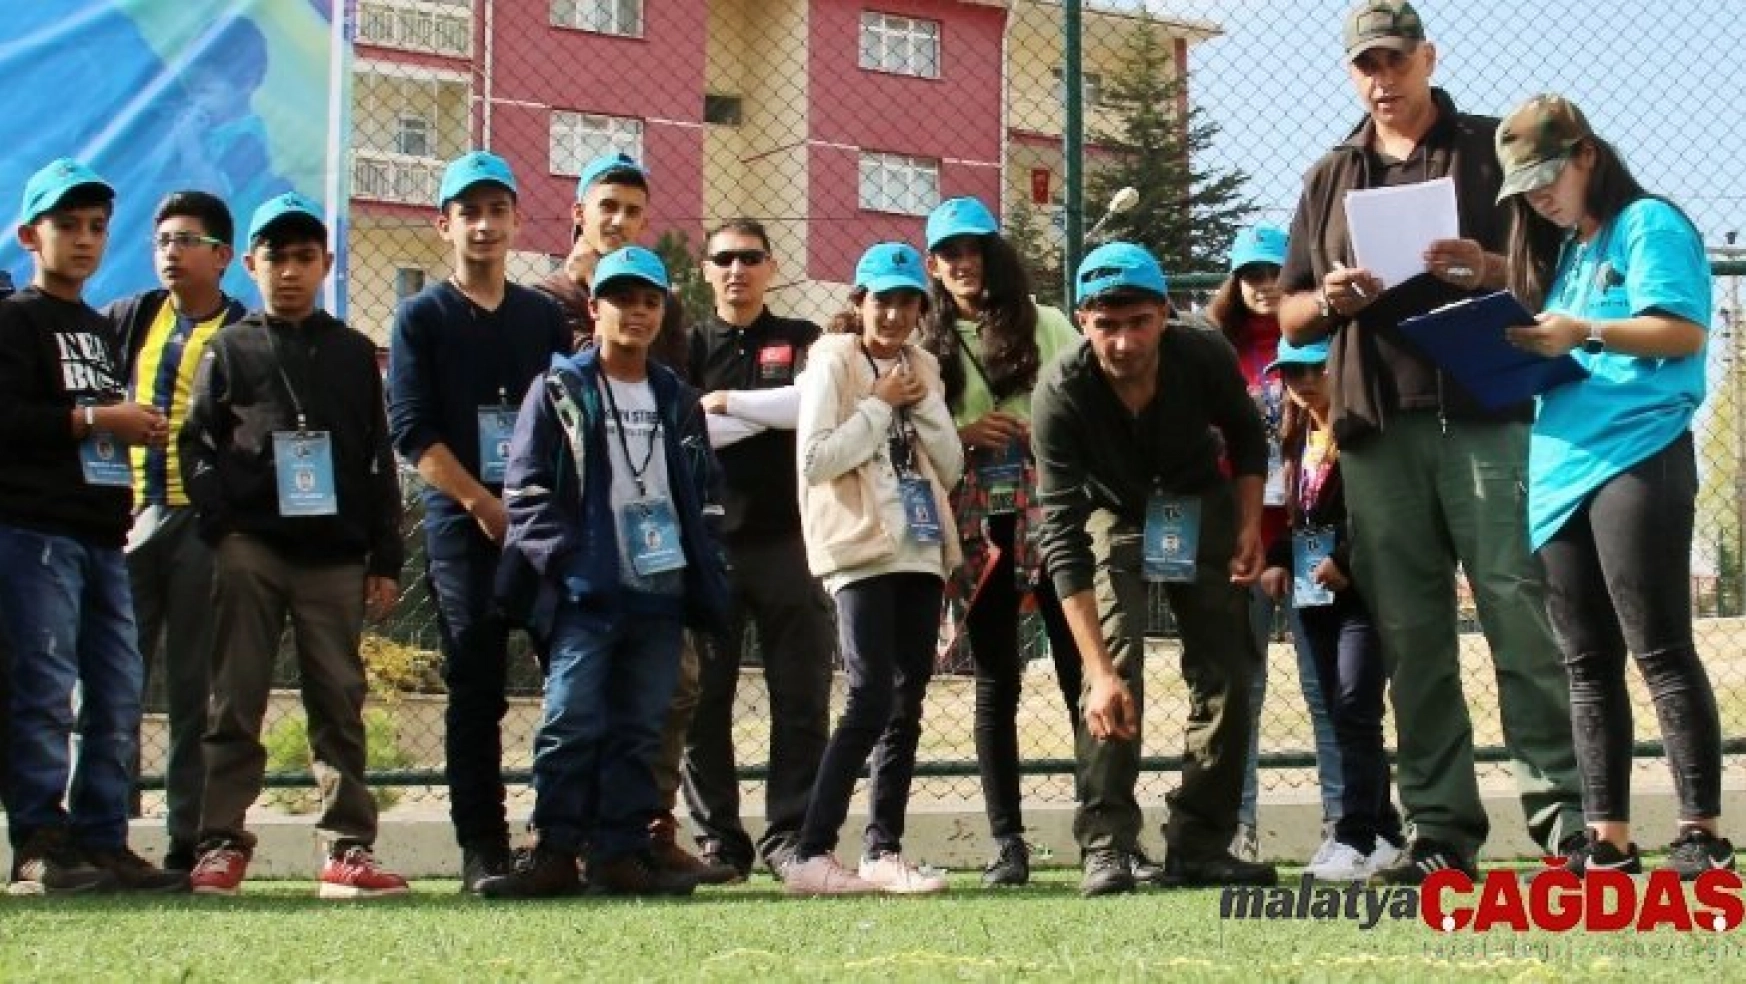 (Özel) Ankara'da misket turnuvası düzenlendi